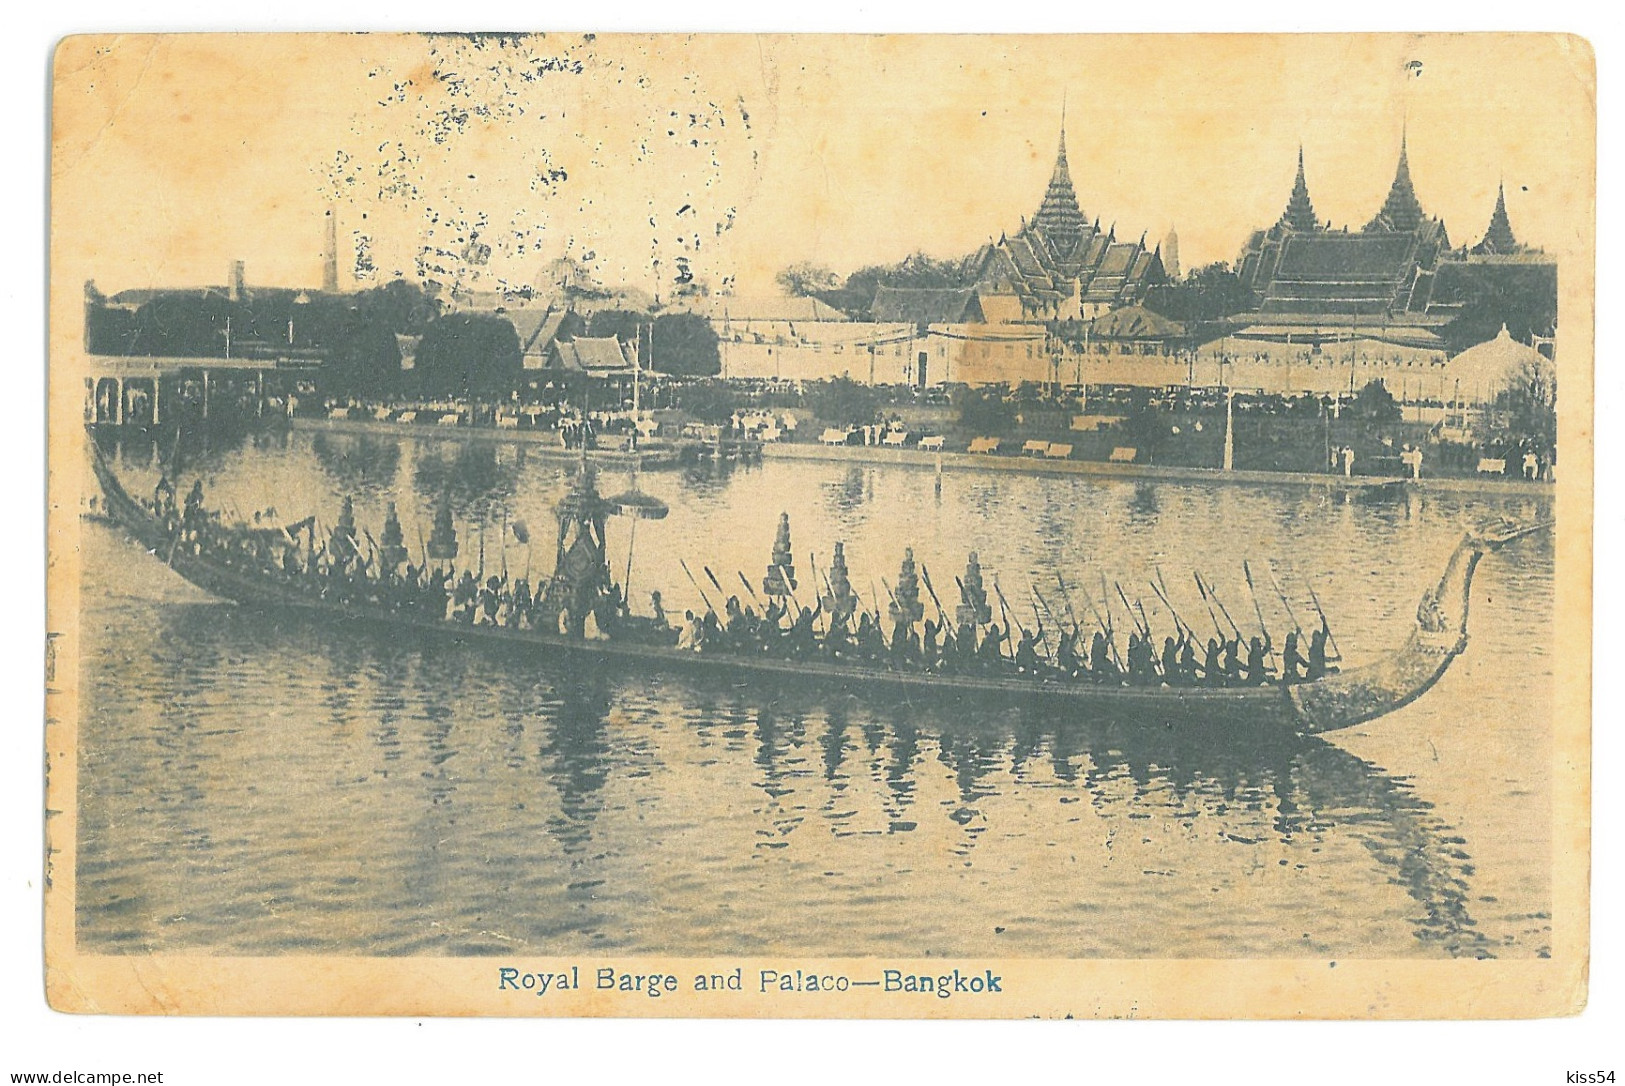 TH 30 - 19310 BANGKOK, Royal Boat, Thailand - Old Postcard - Used - 1923 - Tailandia